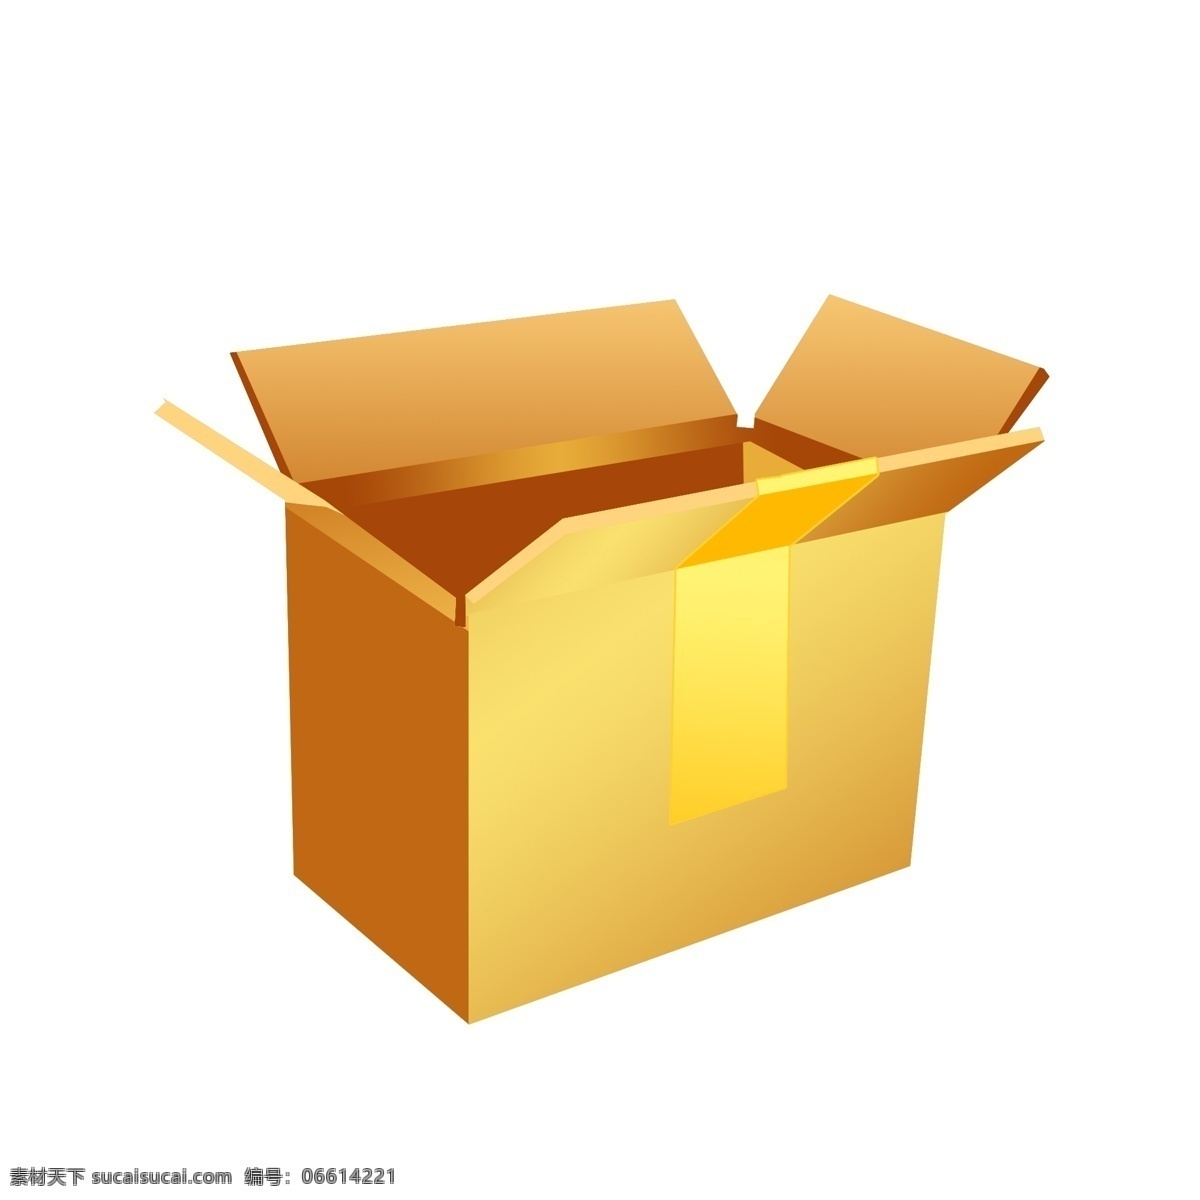 打开 大 纸箱 子 插画 打开的纸箱 大纸箱子插画 包装纸箱子 棕黄色纸箱 粘 胶带 纸板箱